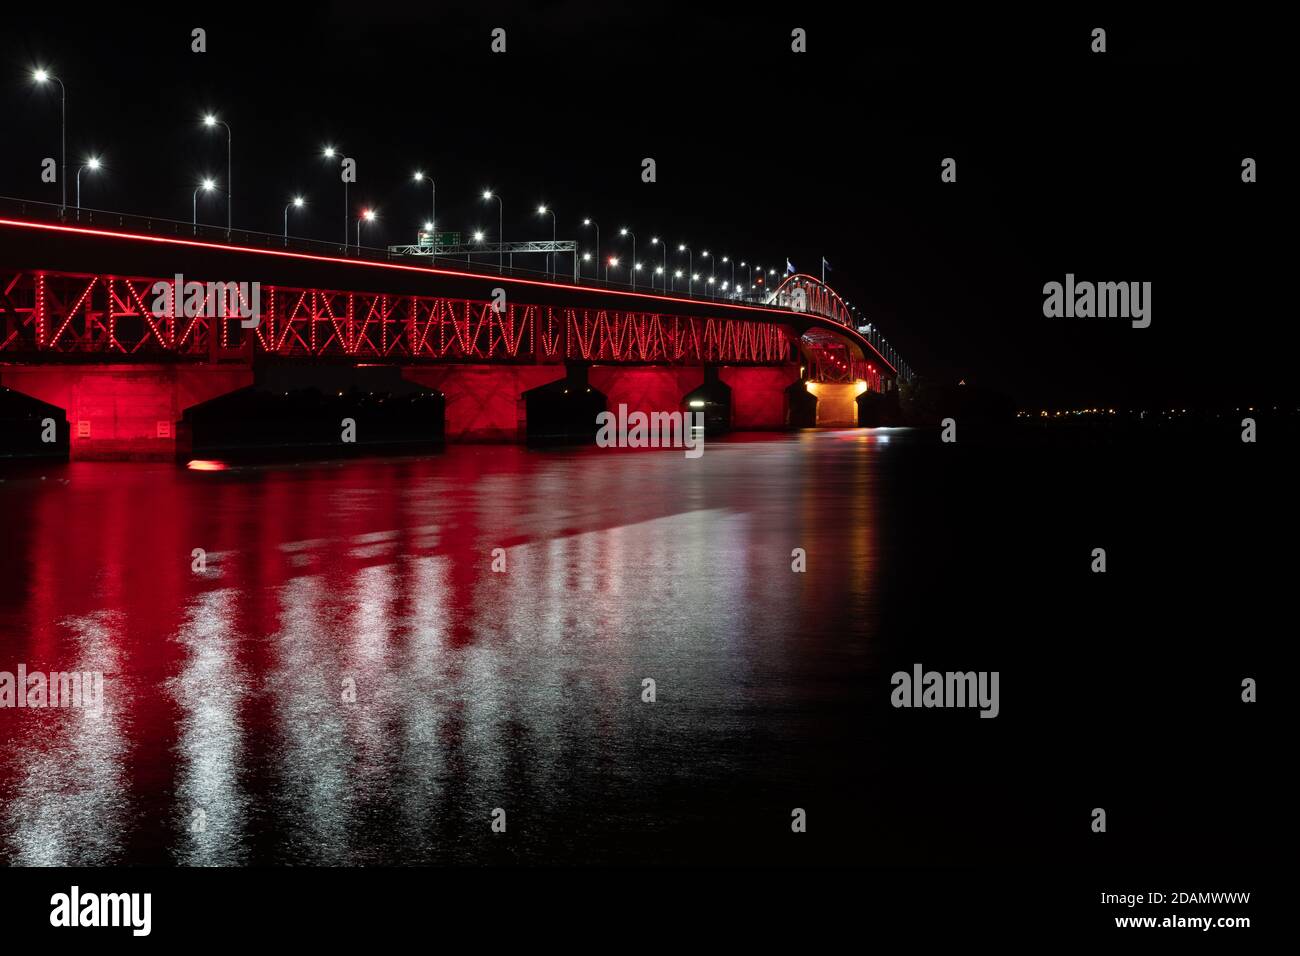 Le pont du port d'Auckland est illuminé en rouge dans le cadre de la commémoration de l'ANZAC qui a lieu le 25 avril de chaque année. Banque D'Images